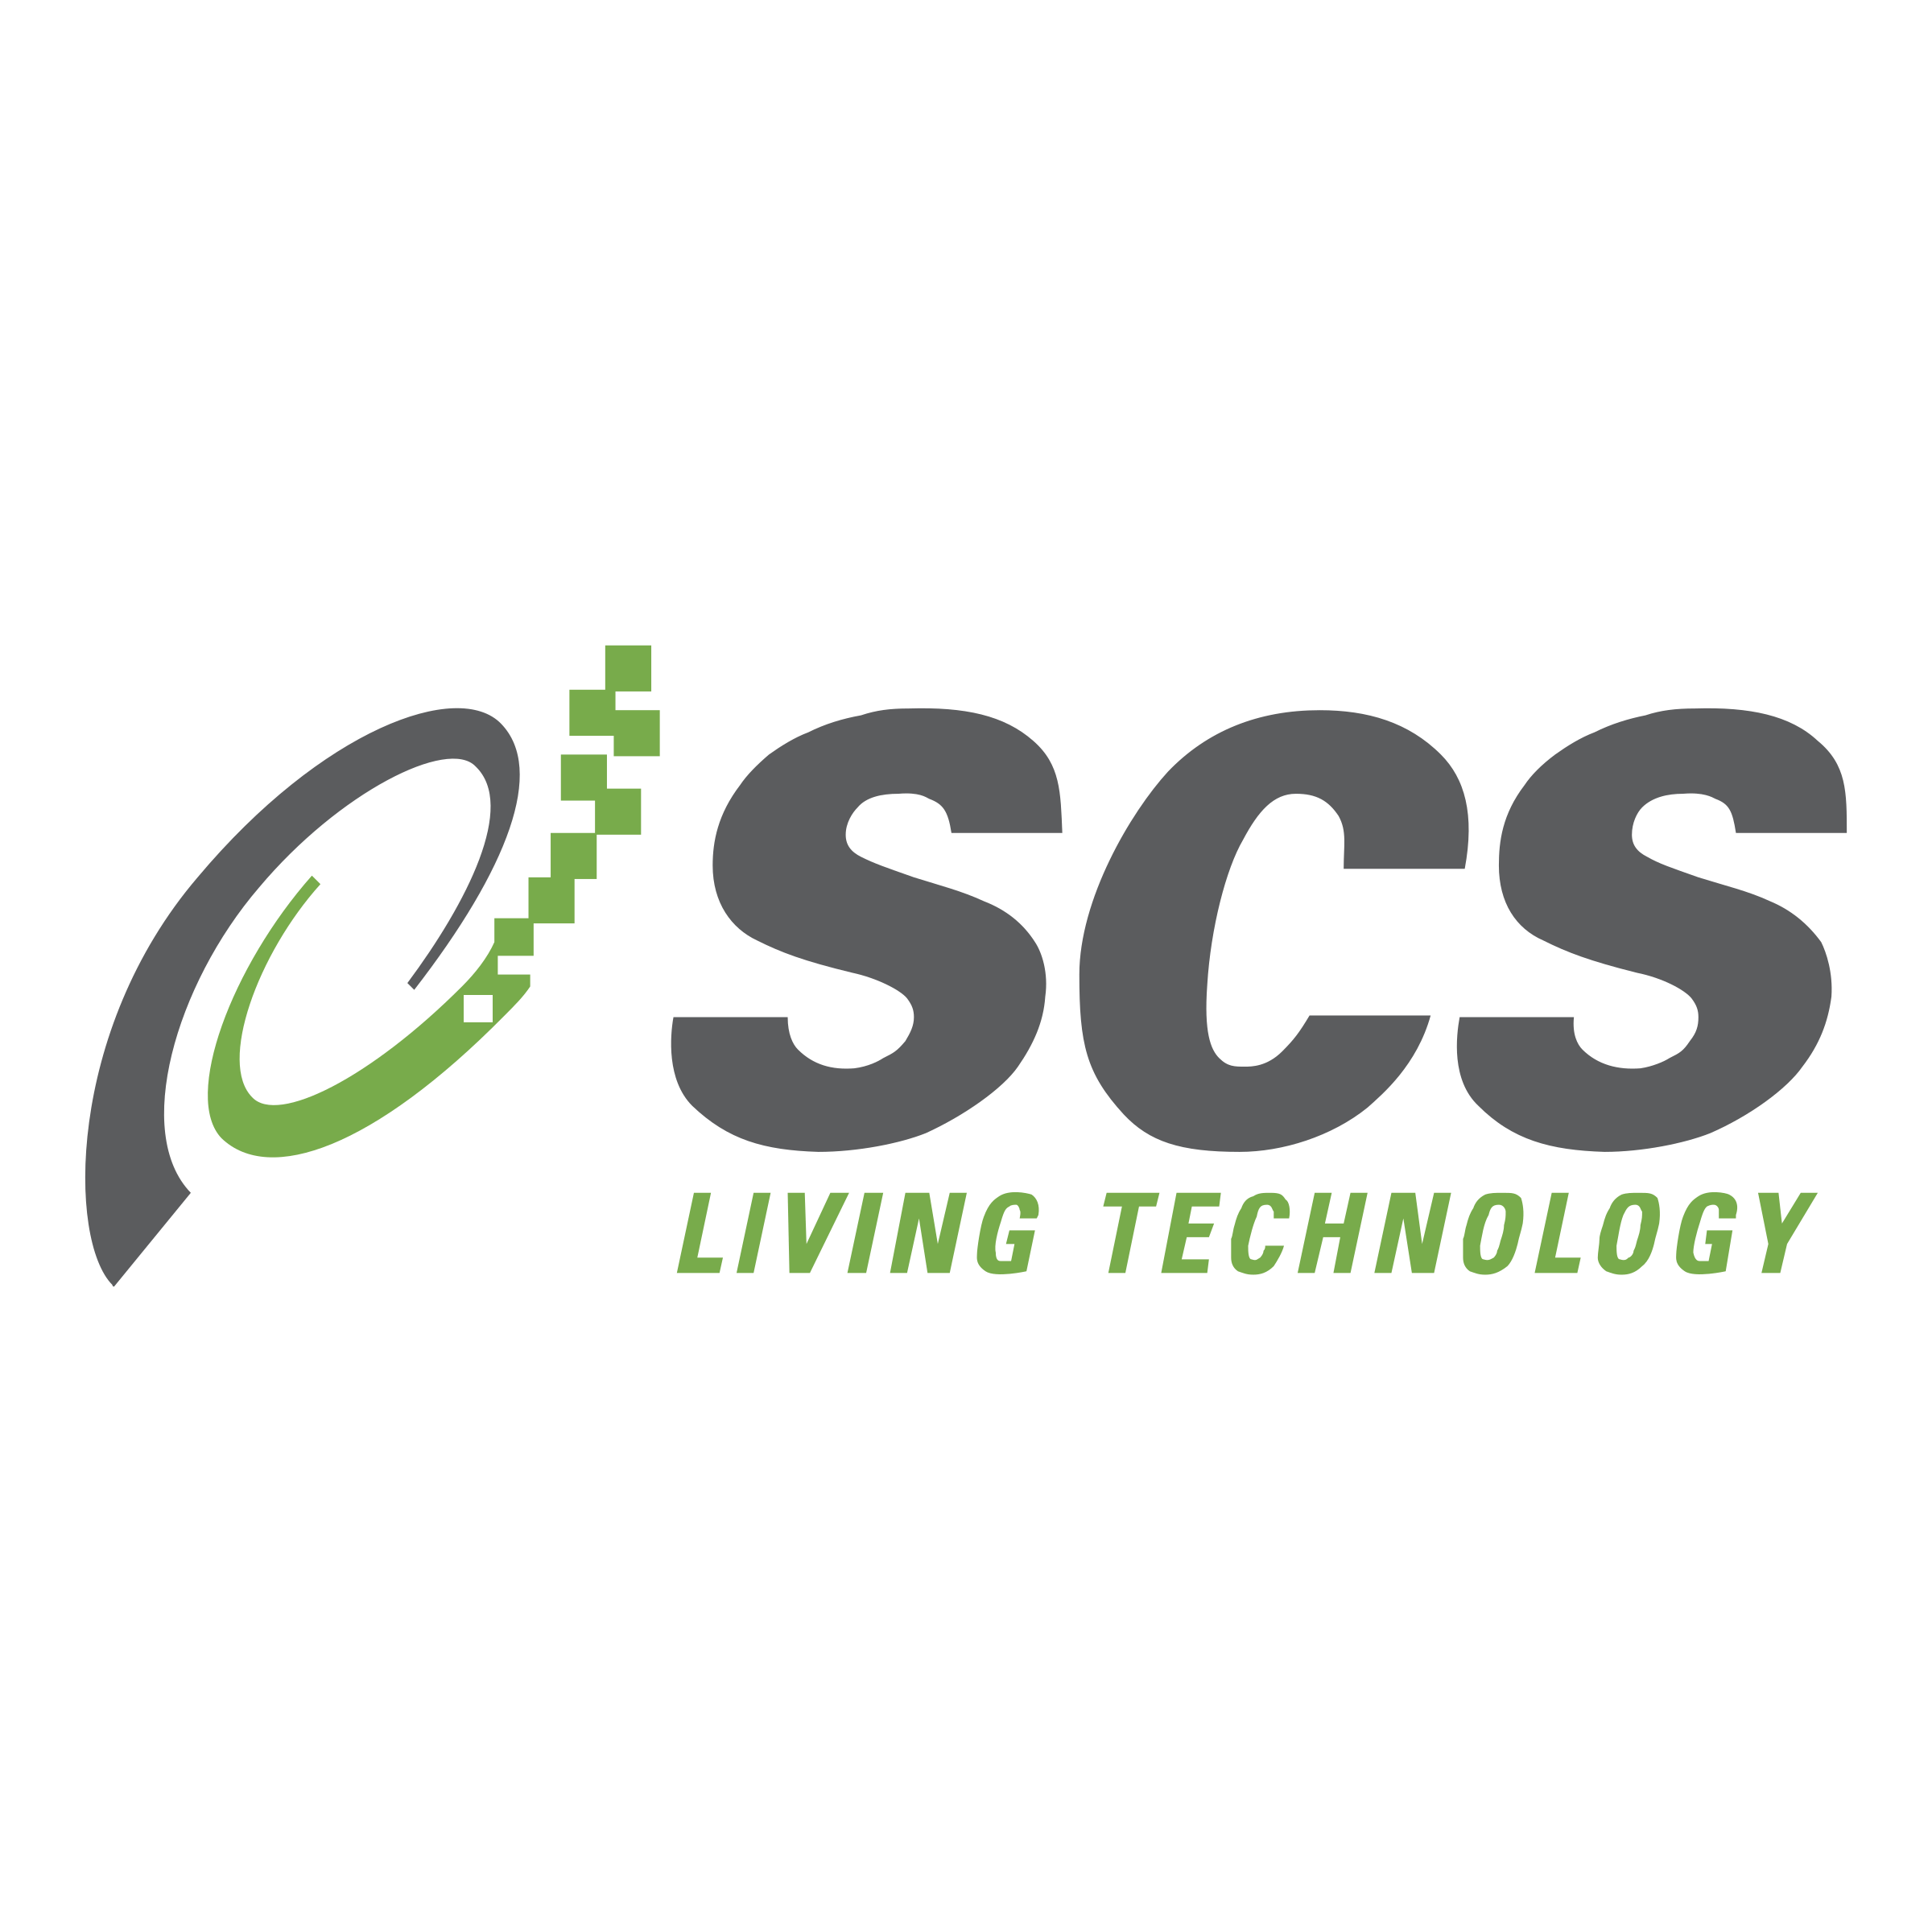 SCS Logo - SCS Logo PNG Transparent & SVG Vector